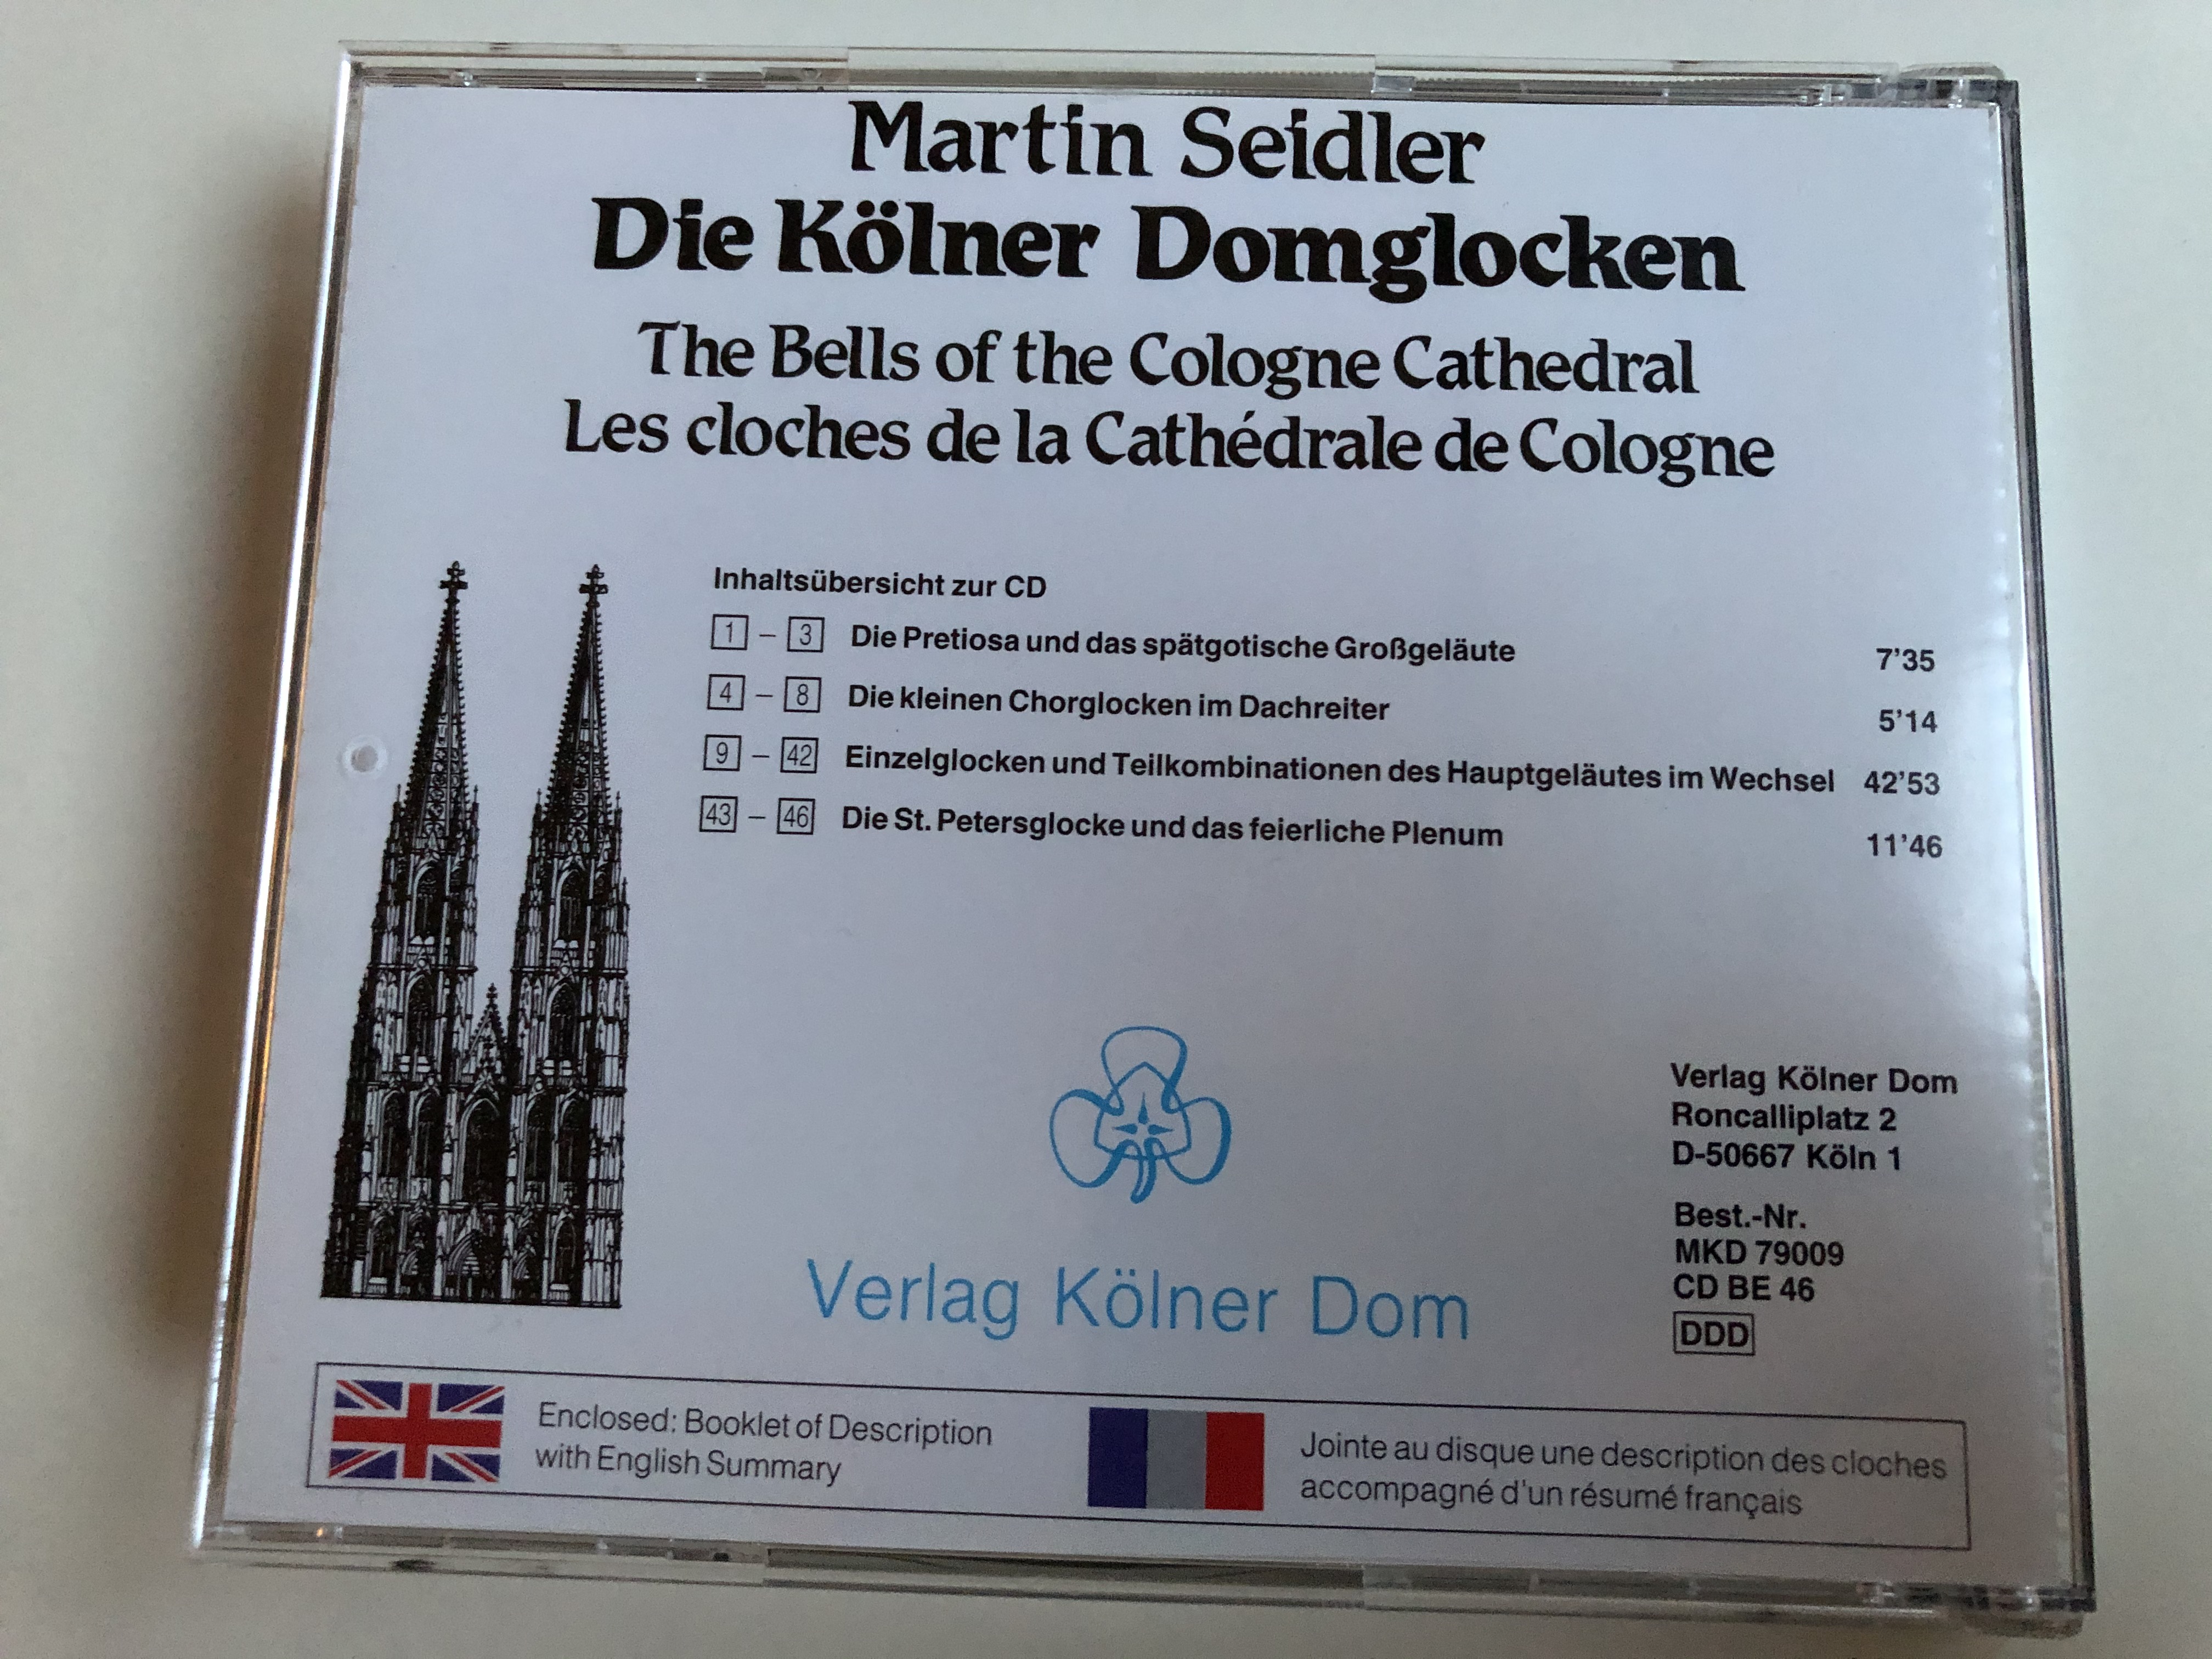 martin-seidler-die-k-lner-domglocken-verlag-k-lner-dom-audio-cd-1992-stereo-mkd-79009-19-.jpg